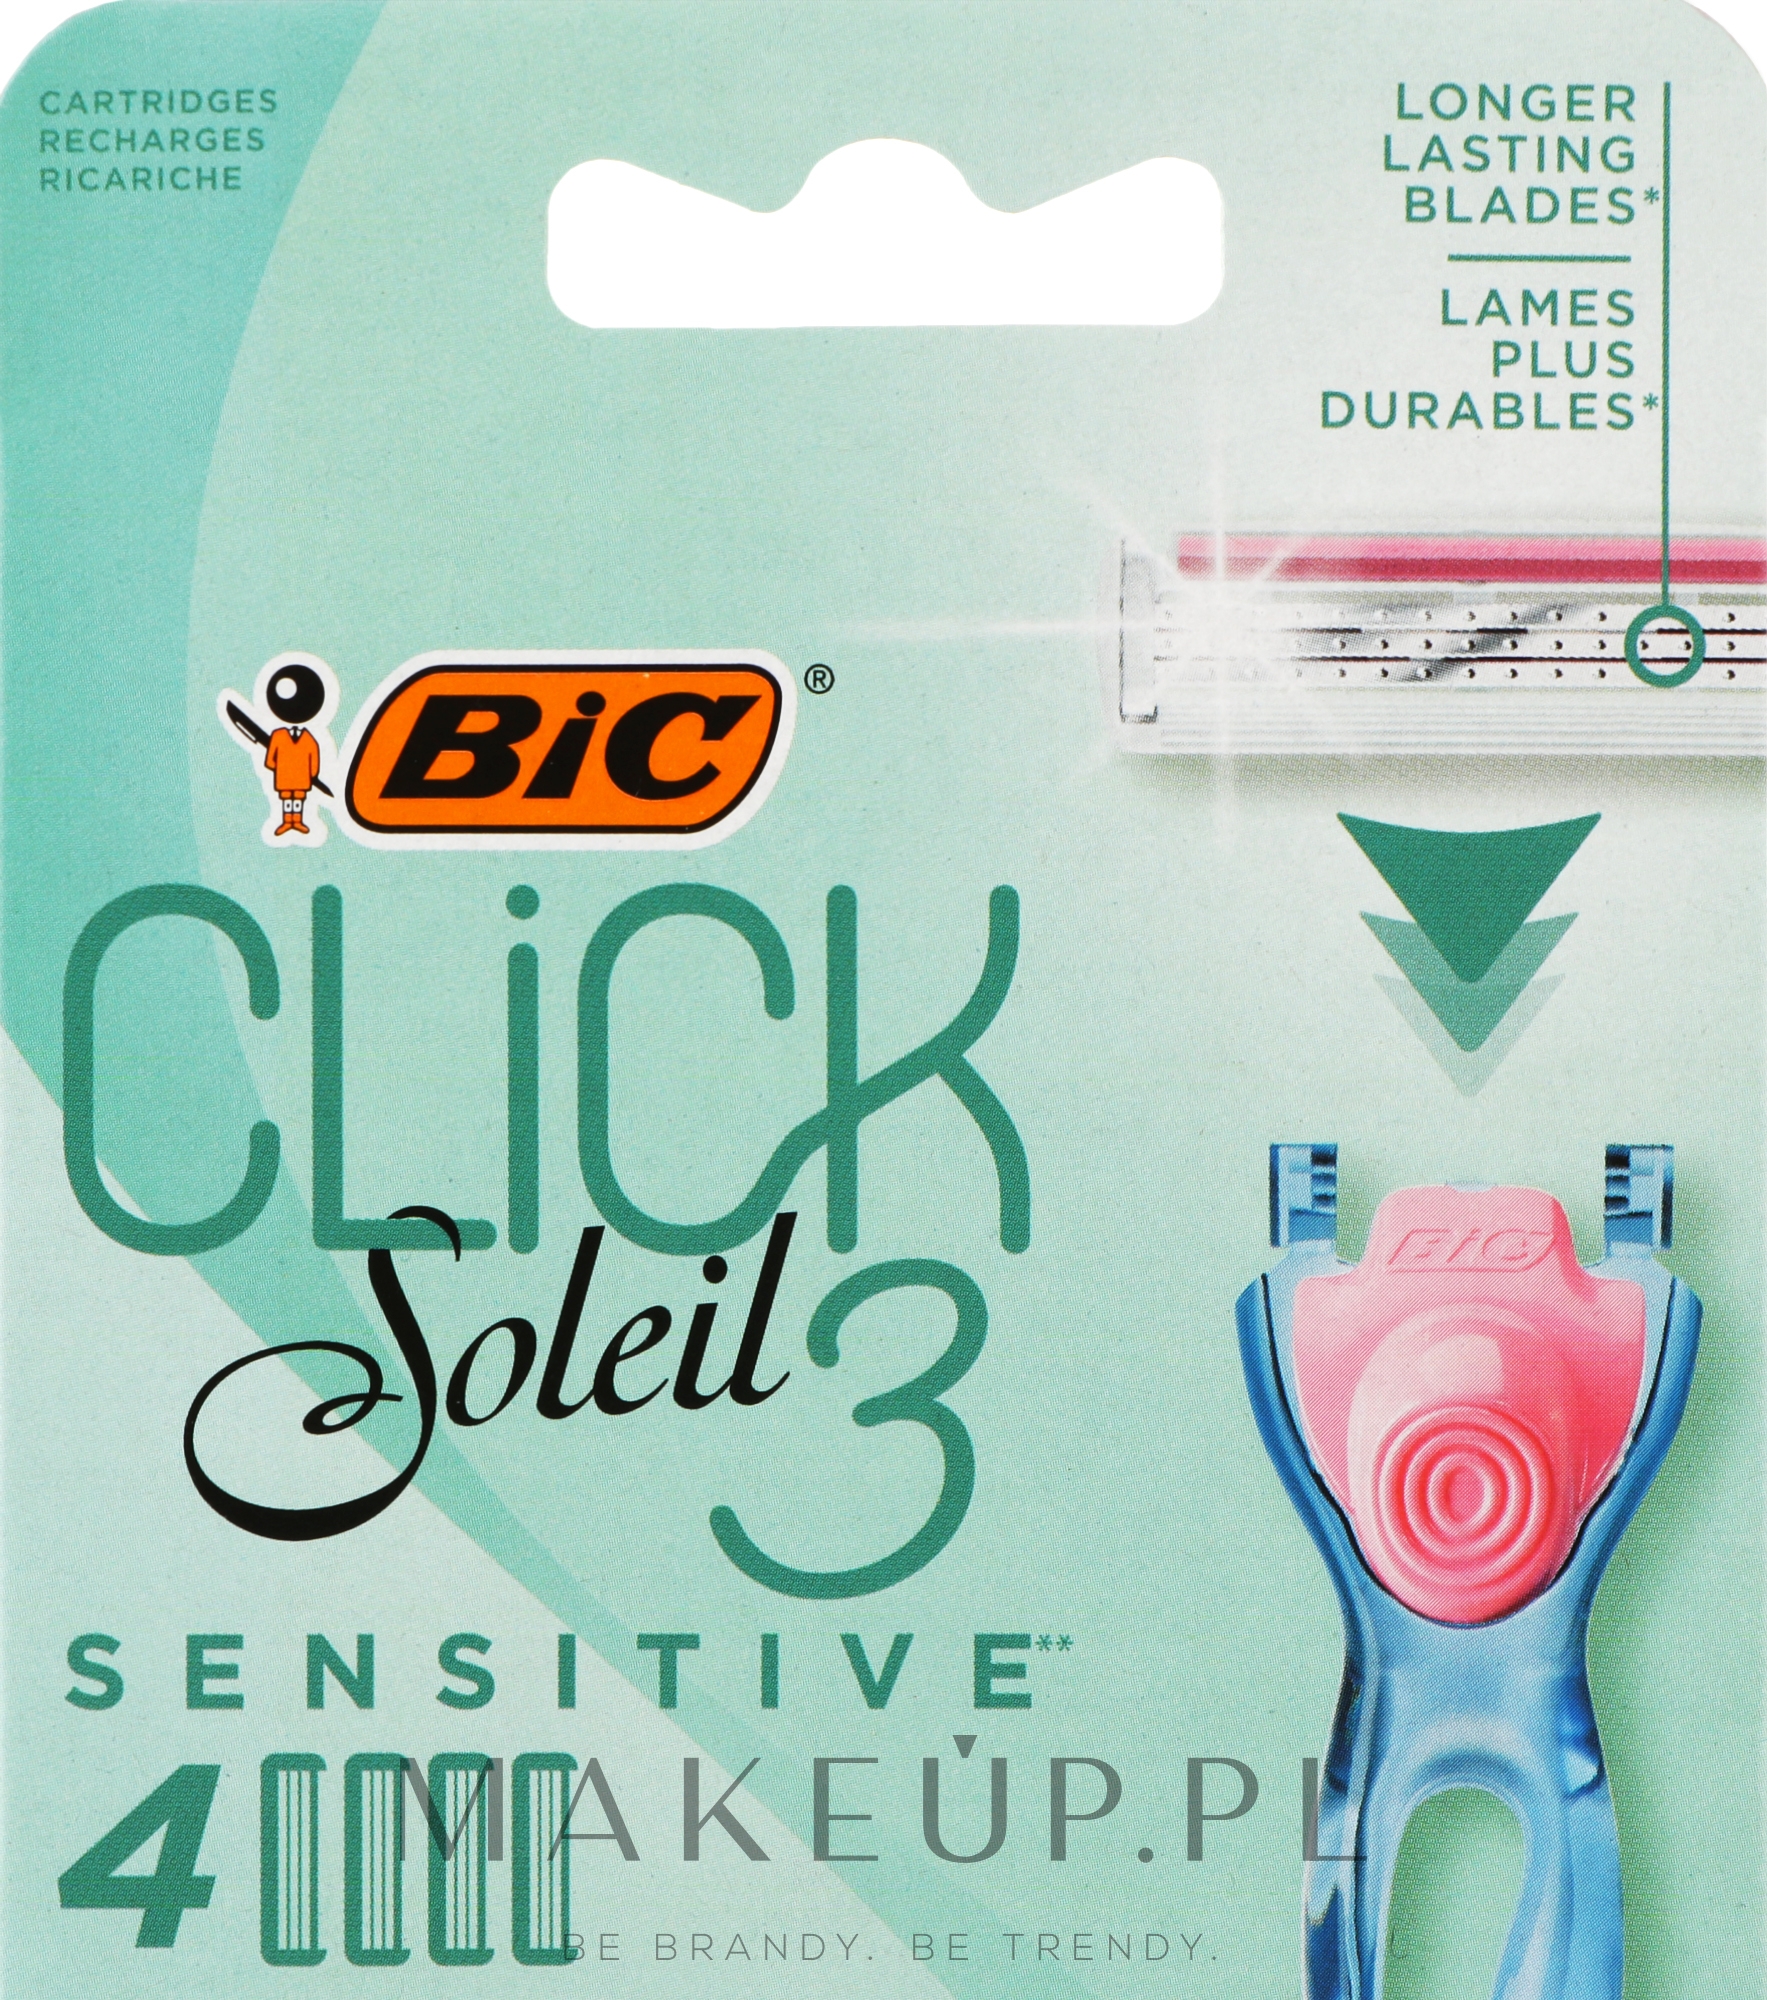 Wymienne wkłady do maszynki do golenia, 4 szt. - Bic Click 3 Soleil Sensitive — Zdjęcie 4 szt.